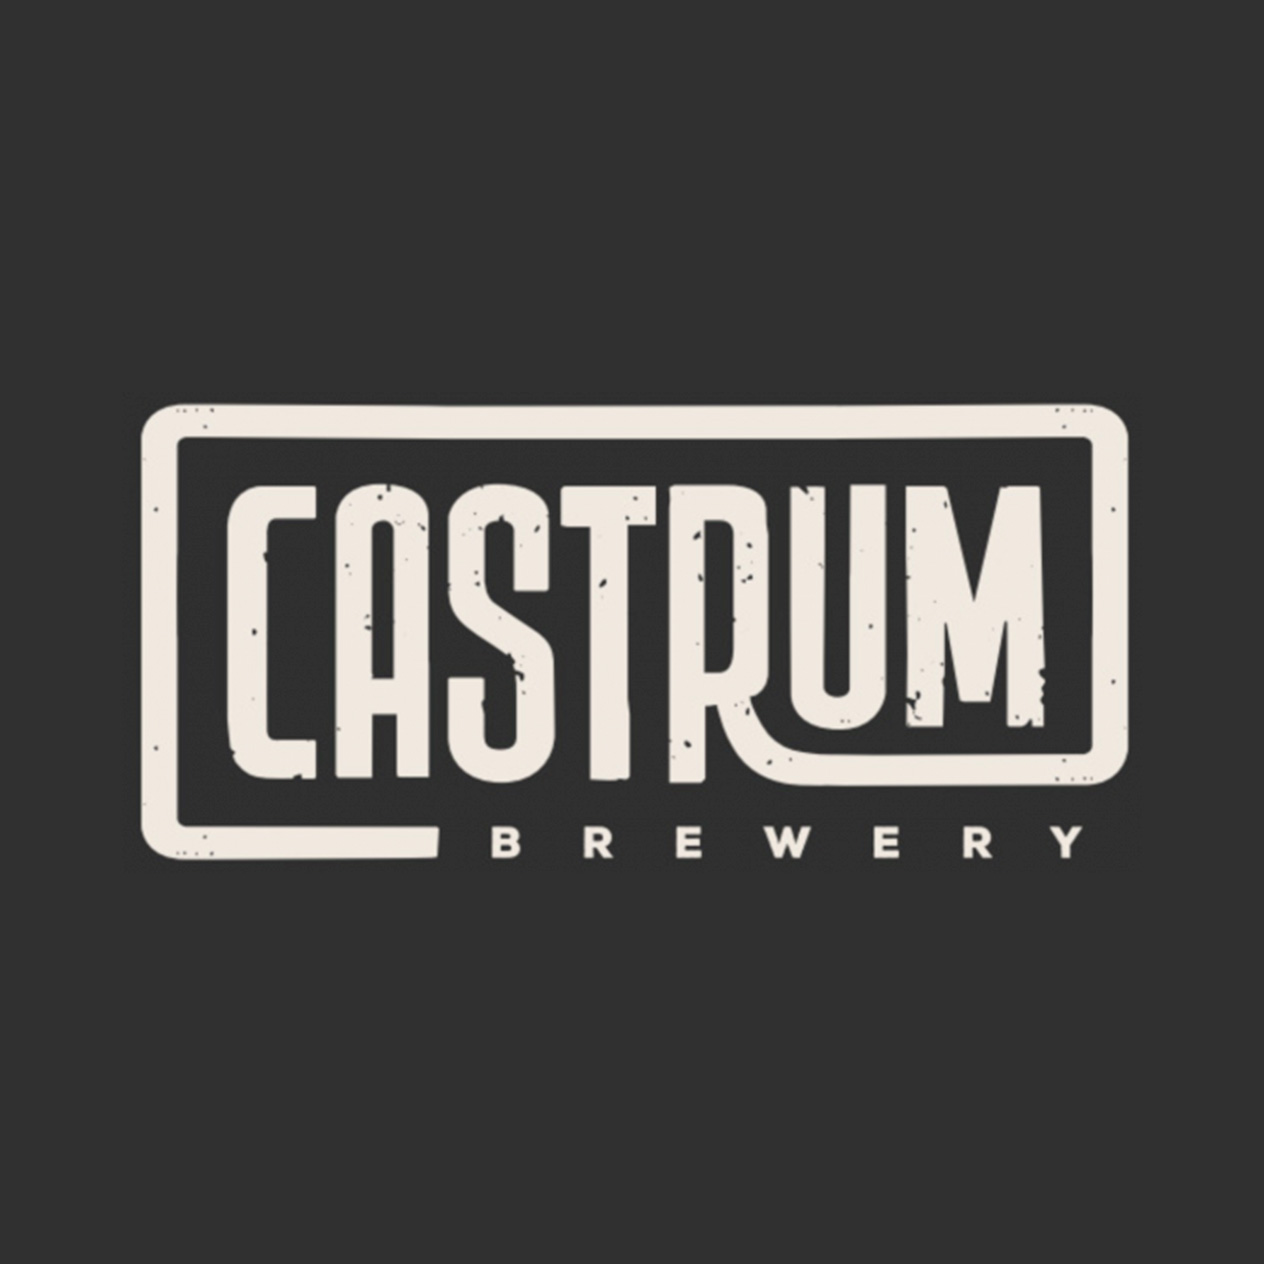 Cervezas Castrum en Mrpiggins